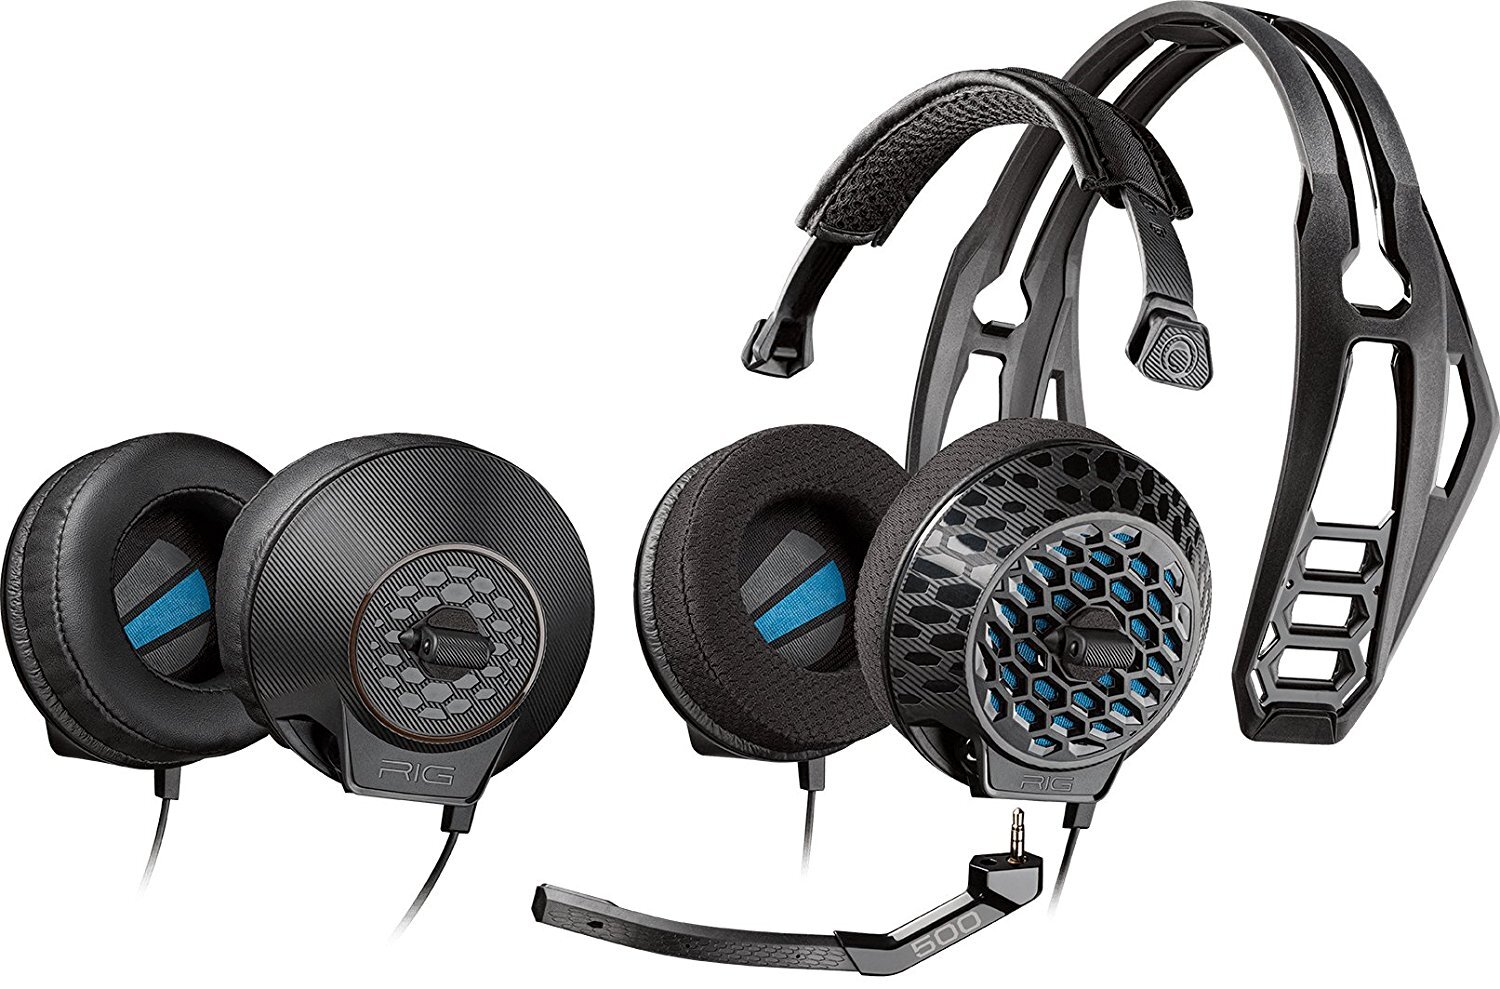 Tai nghe - Headphone Plantronics RIG 500E